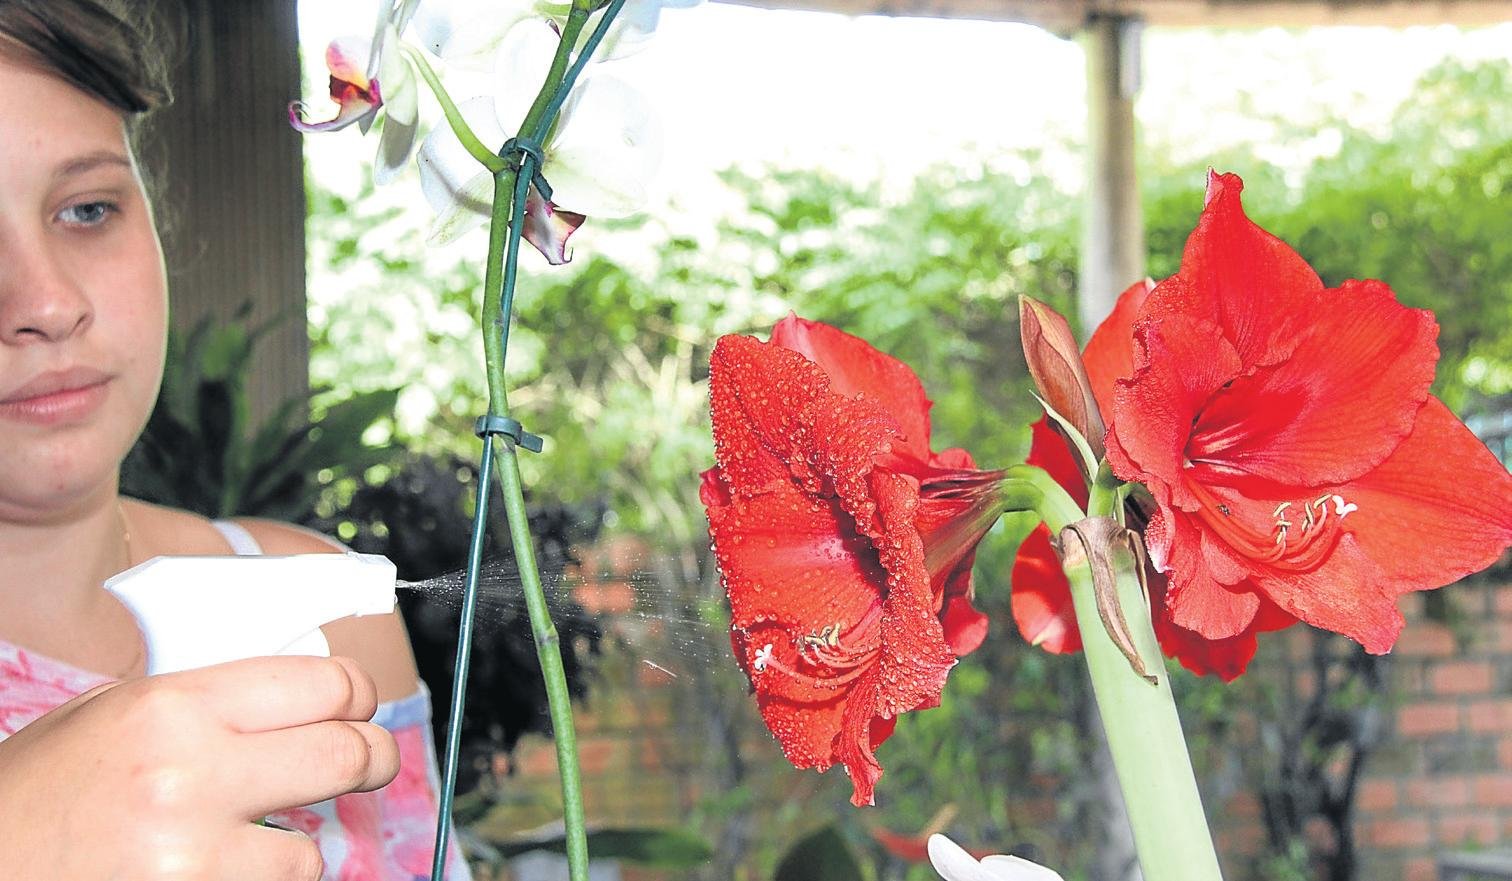 Flores merecem trato especial nestes dias de calor - Região - Jornal VS